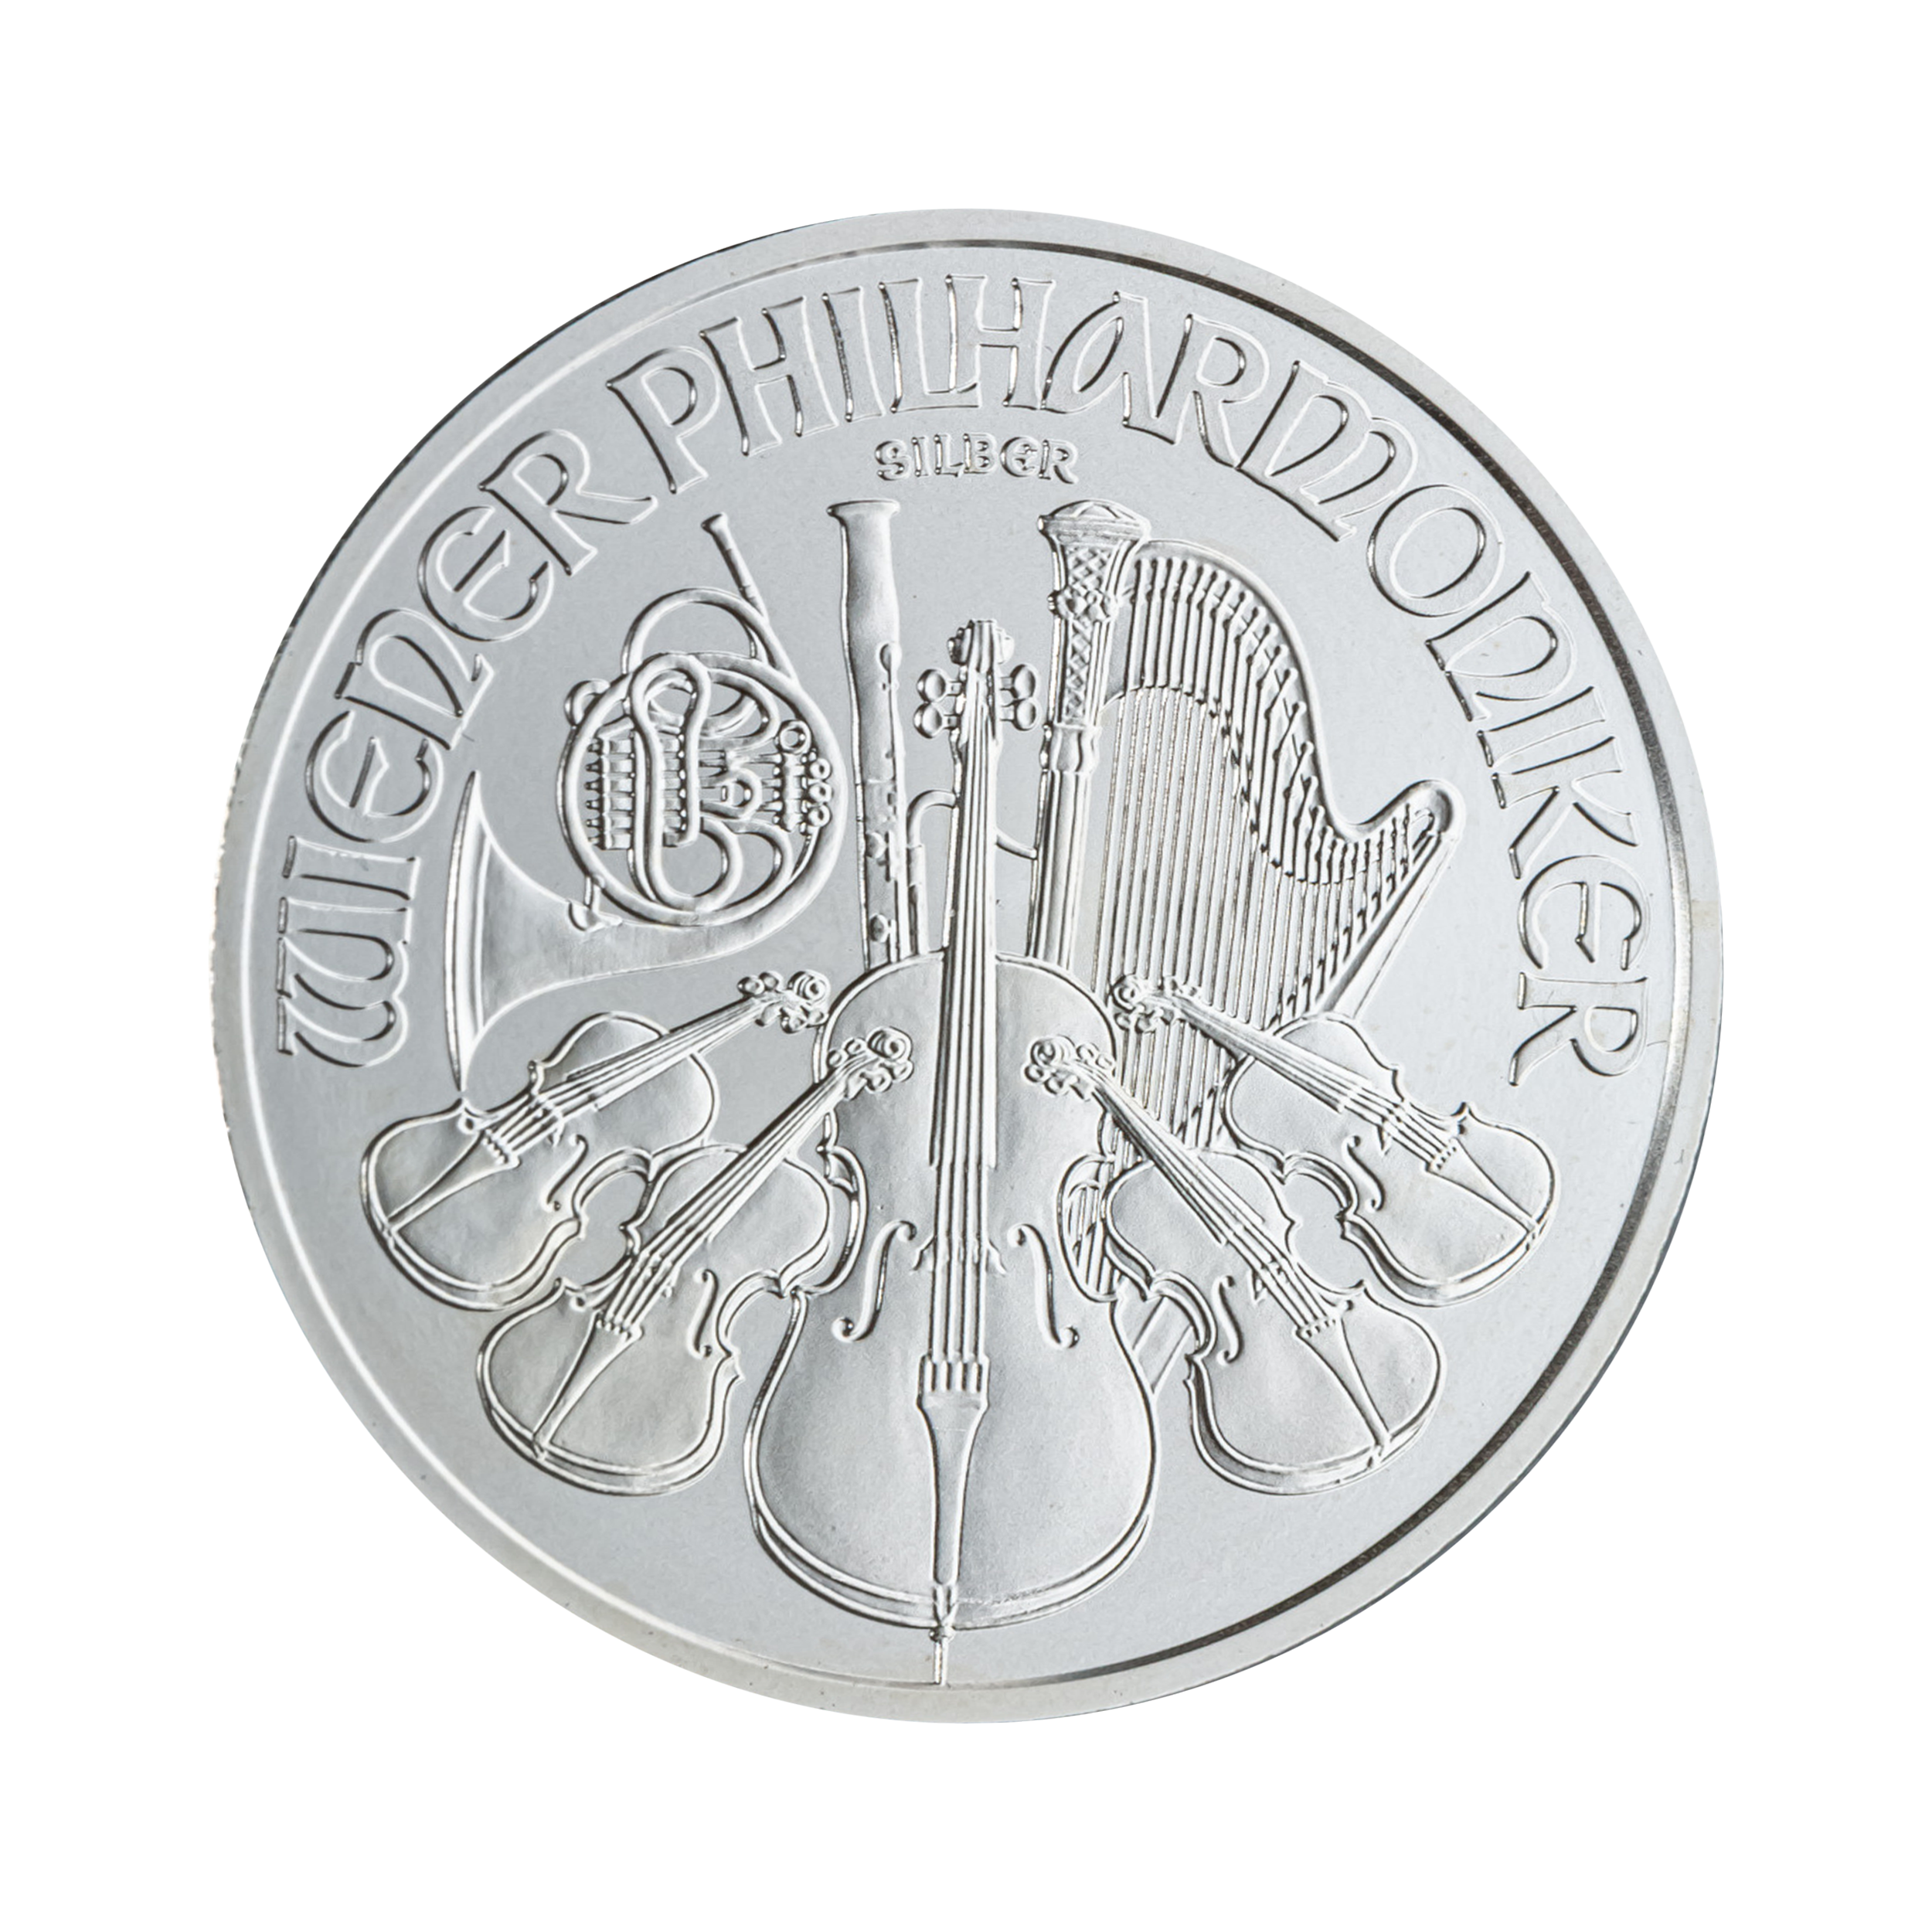 Ontwerp zilveren Wiener Philharmoniker munt